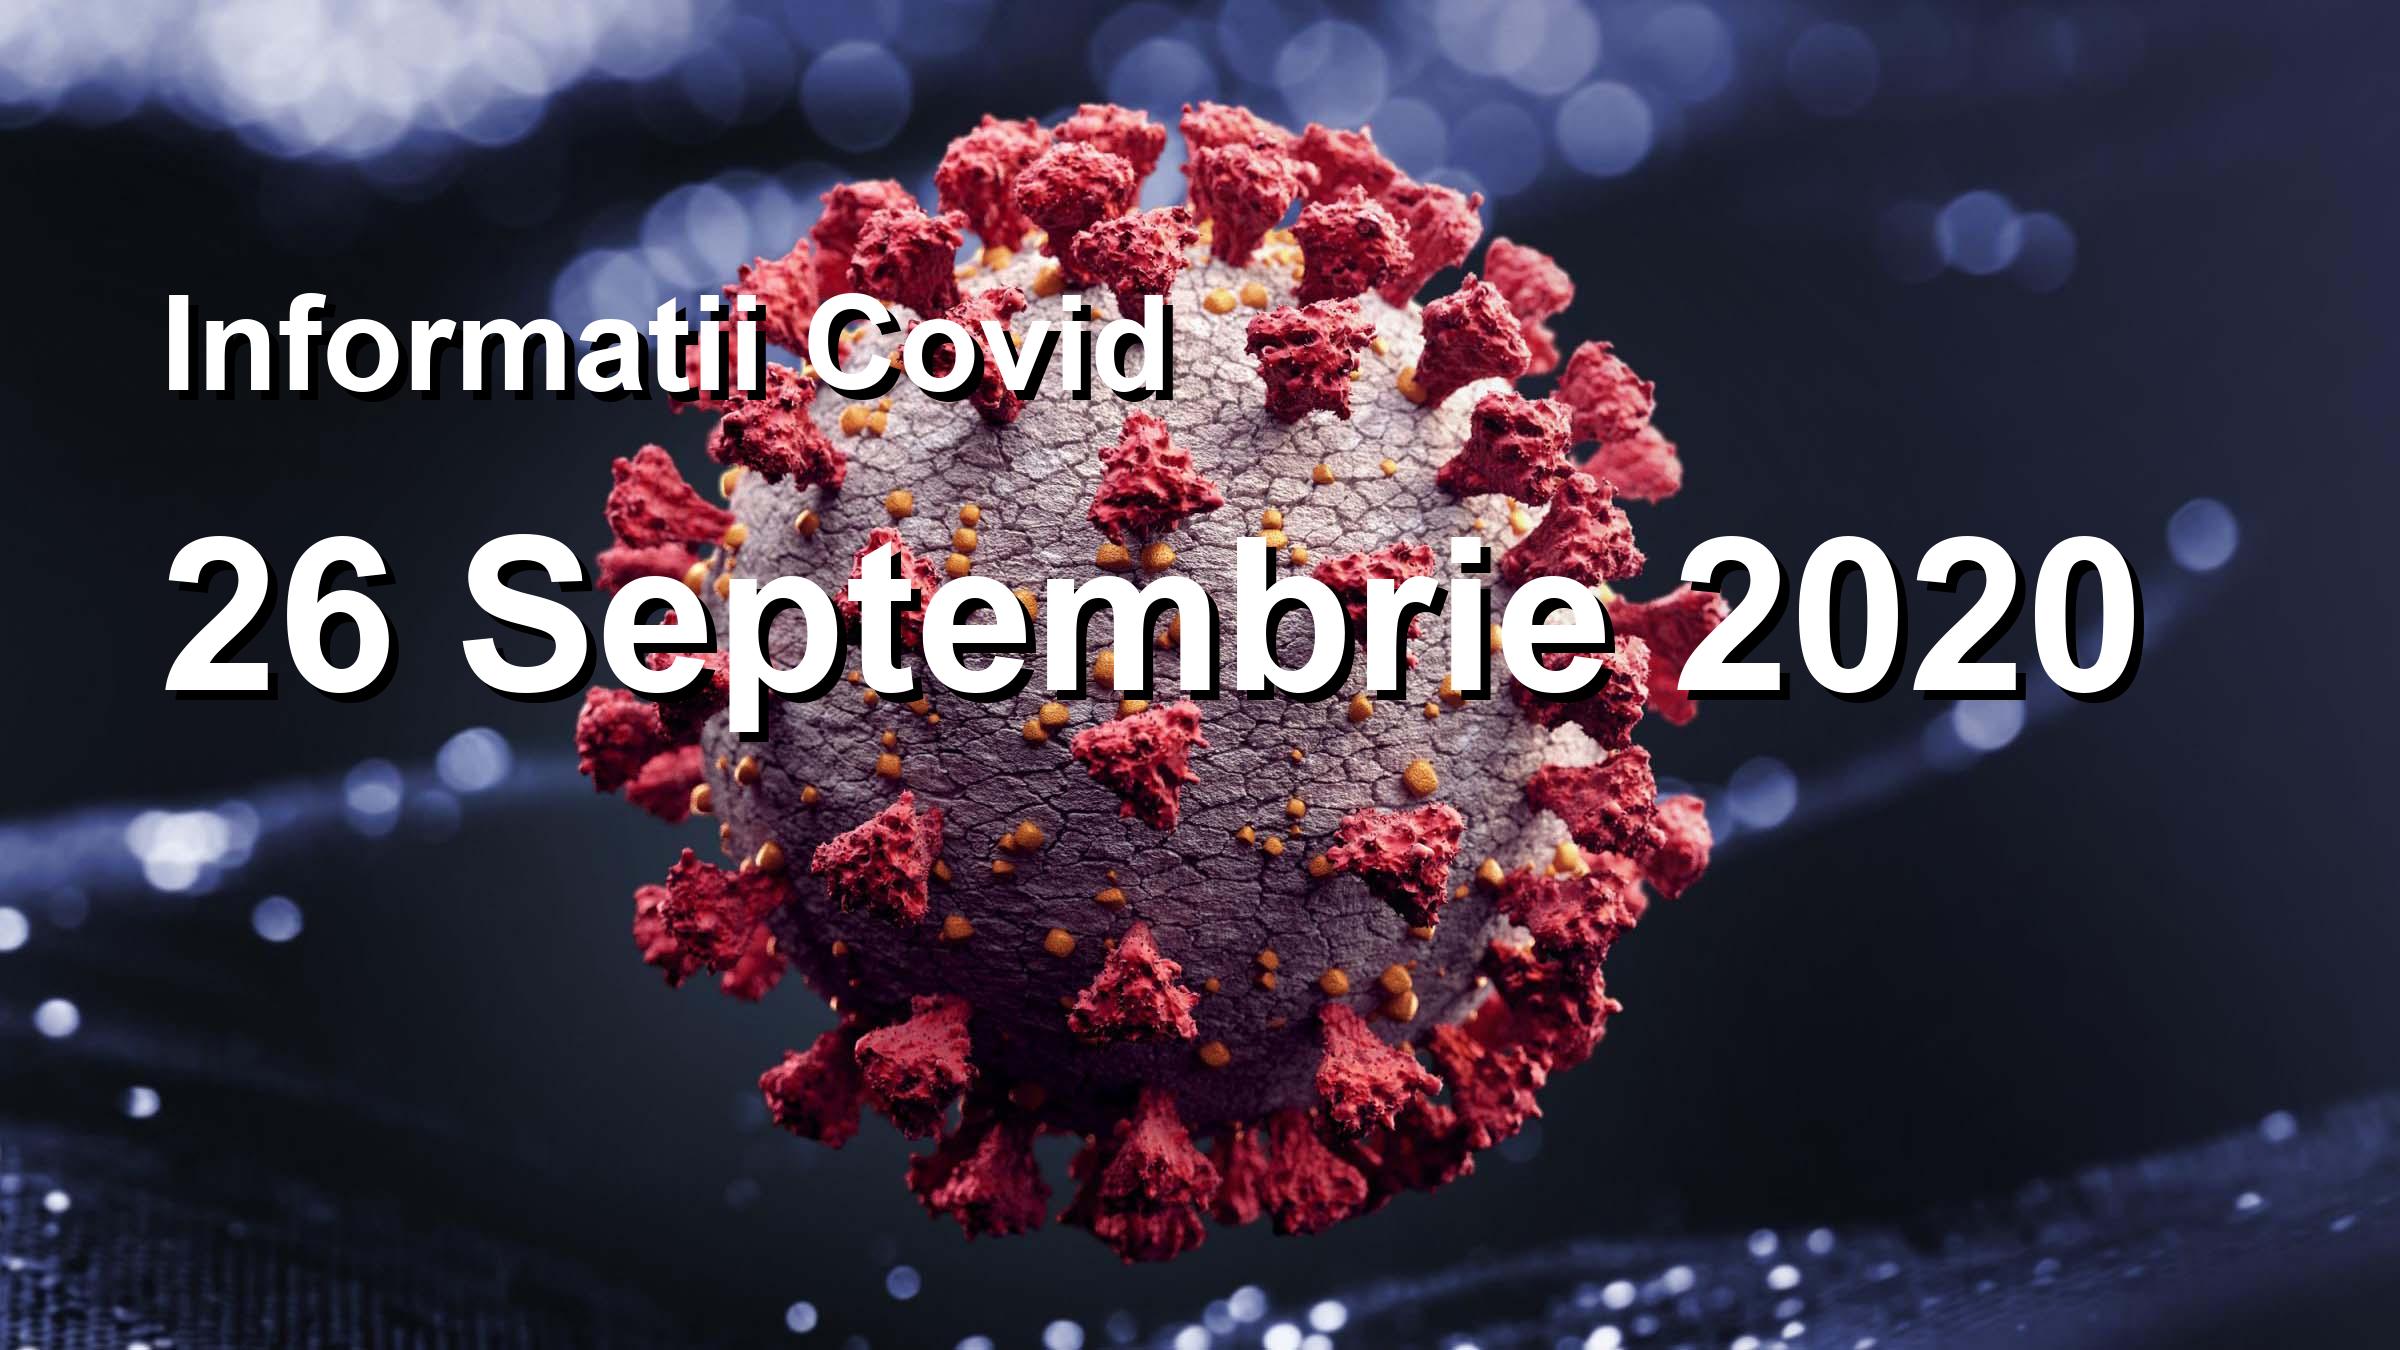 Informatii Covid-19 pentru 26 Septembrie 2020: 1552 infectari, 24328 teste. | Coronavirus Romania